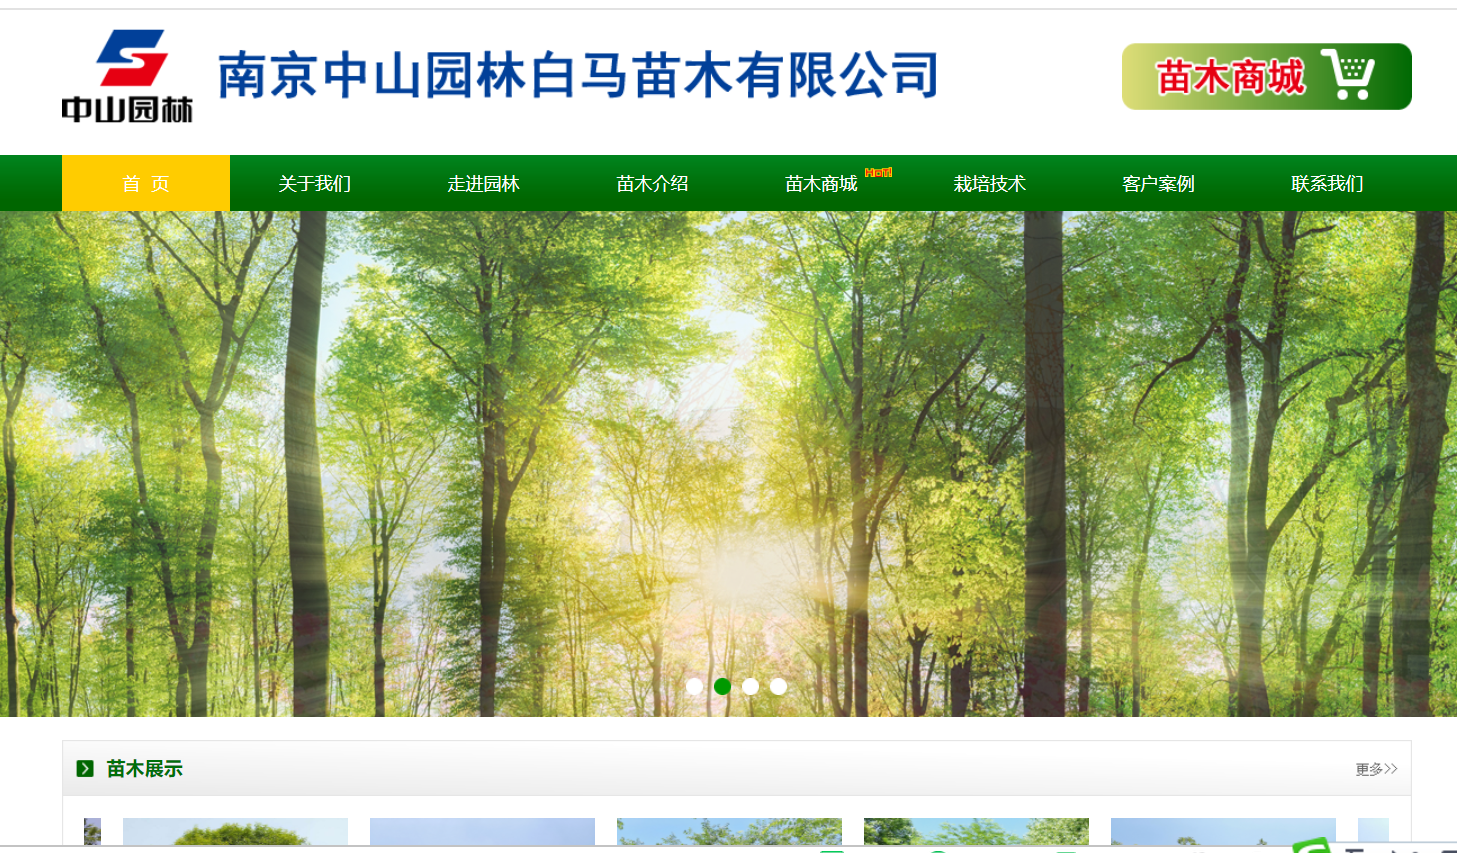 南京中山园林白马苗木有限公司